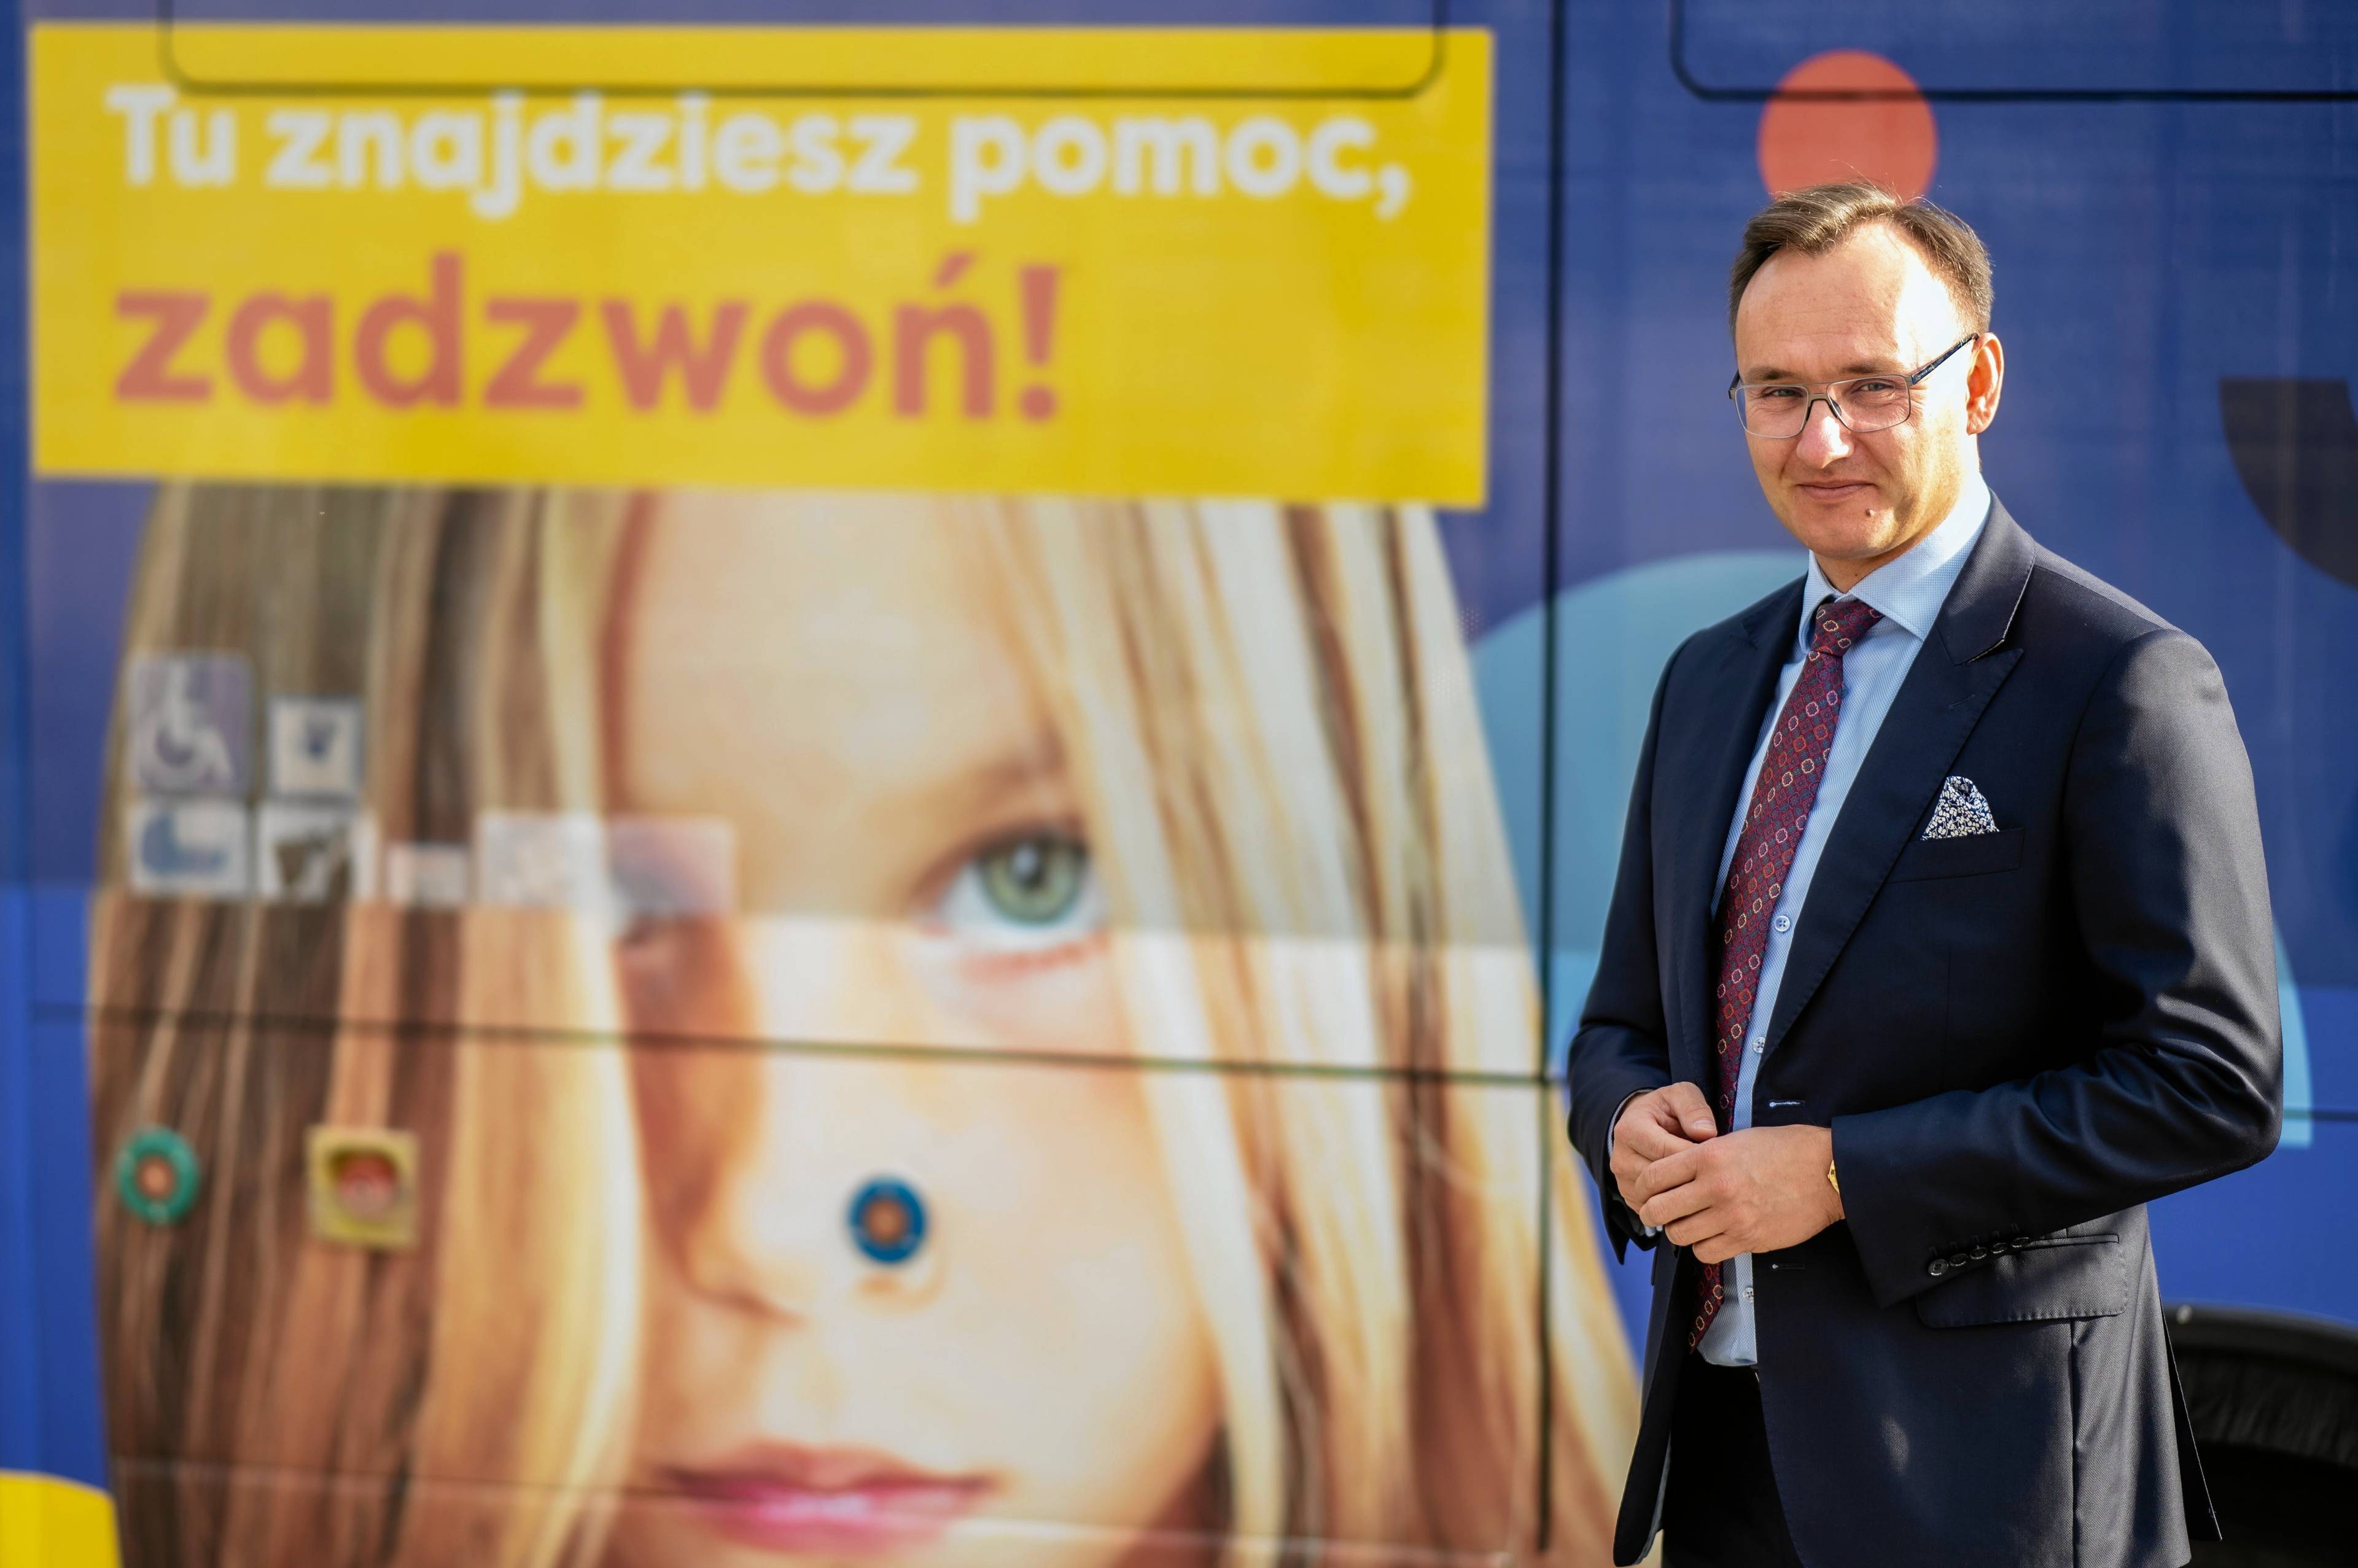 Na zdjęciu rzecznik praw dziecka Mikołaj Pawlak na tle baneru informującego o telefonie zaufania dla dzieci i młodzieży.